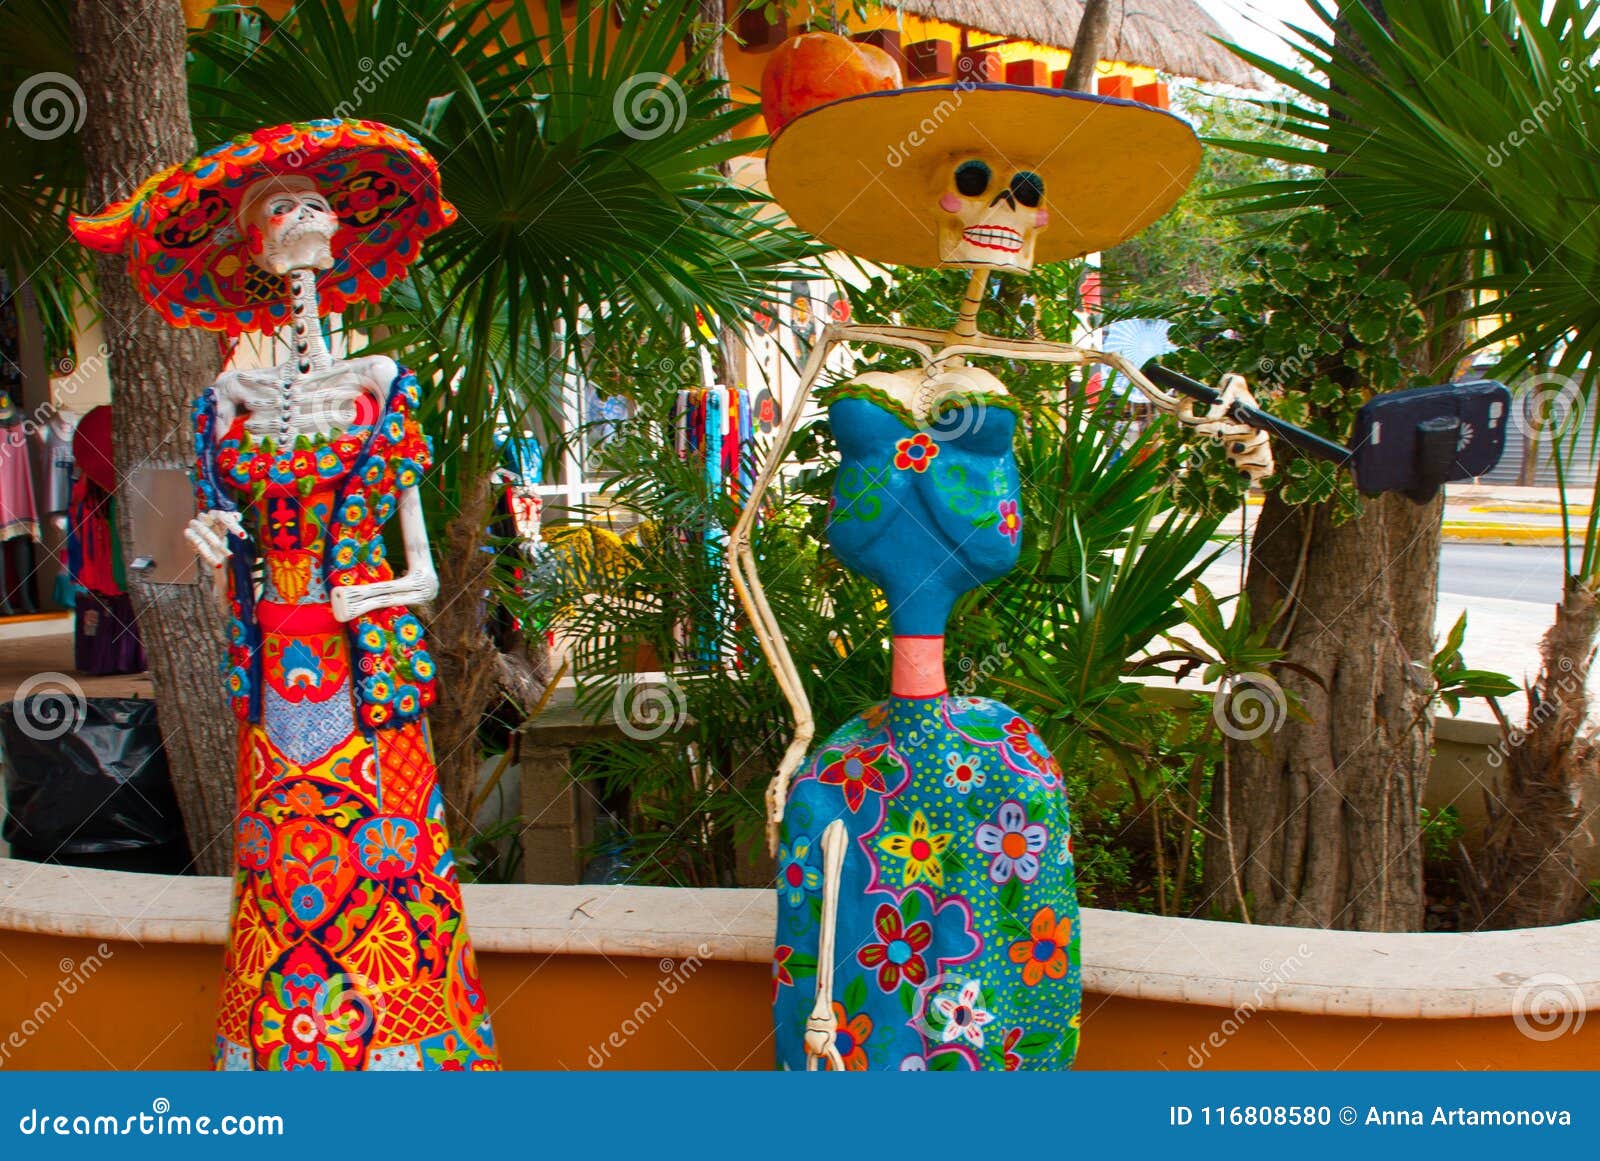 Tulum Quintana Roo Mexiko Statuen Der Gottin Des Todes Catrina Am Eingang Zum Souvenirladen Die Hauptfigur Von T Stockfoto Bild Von Tulum Catrina